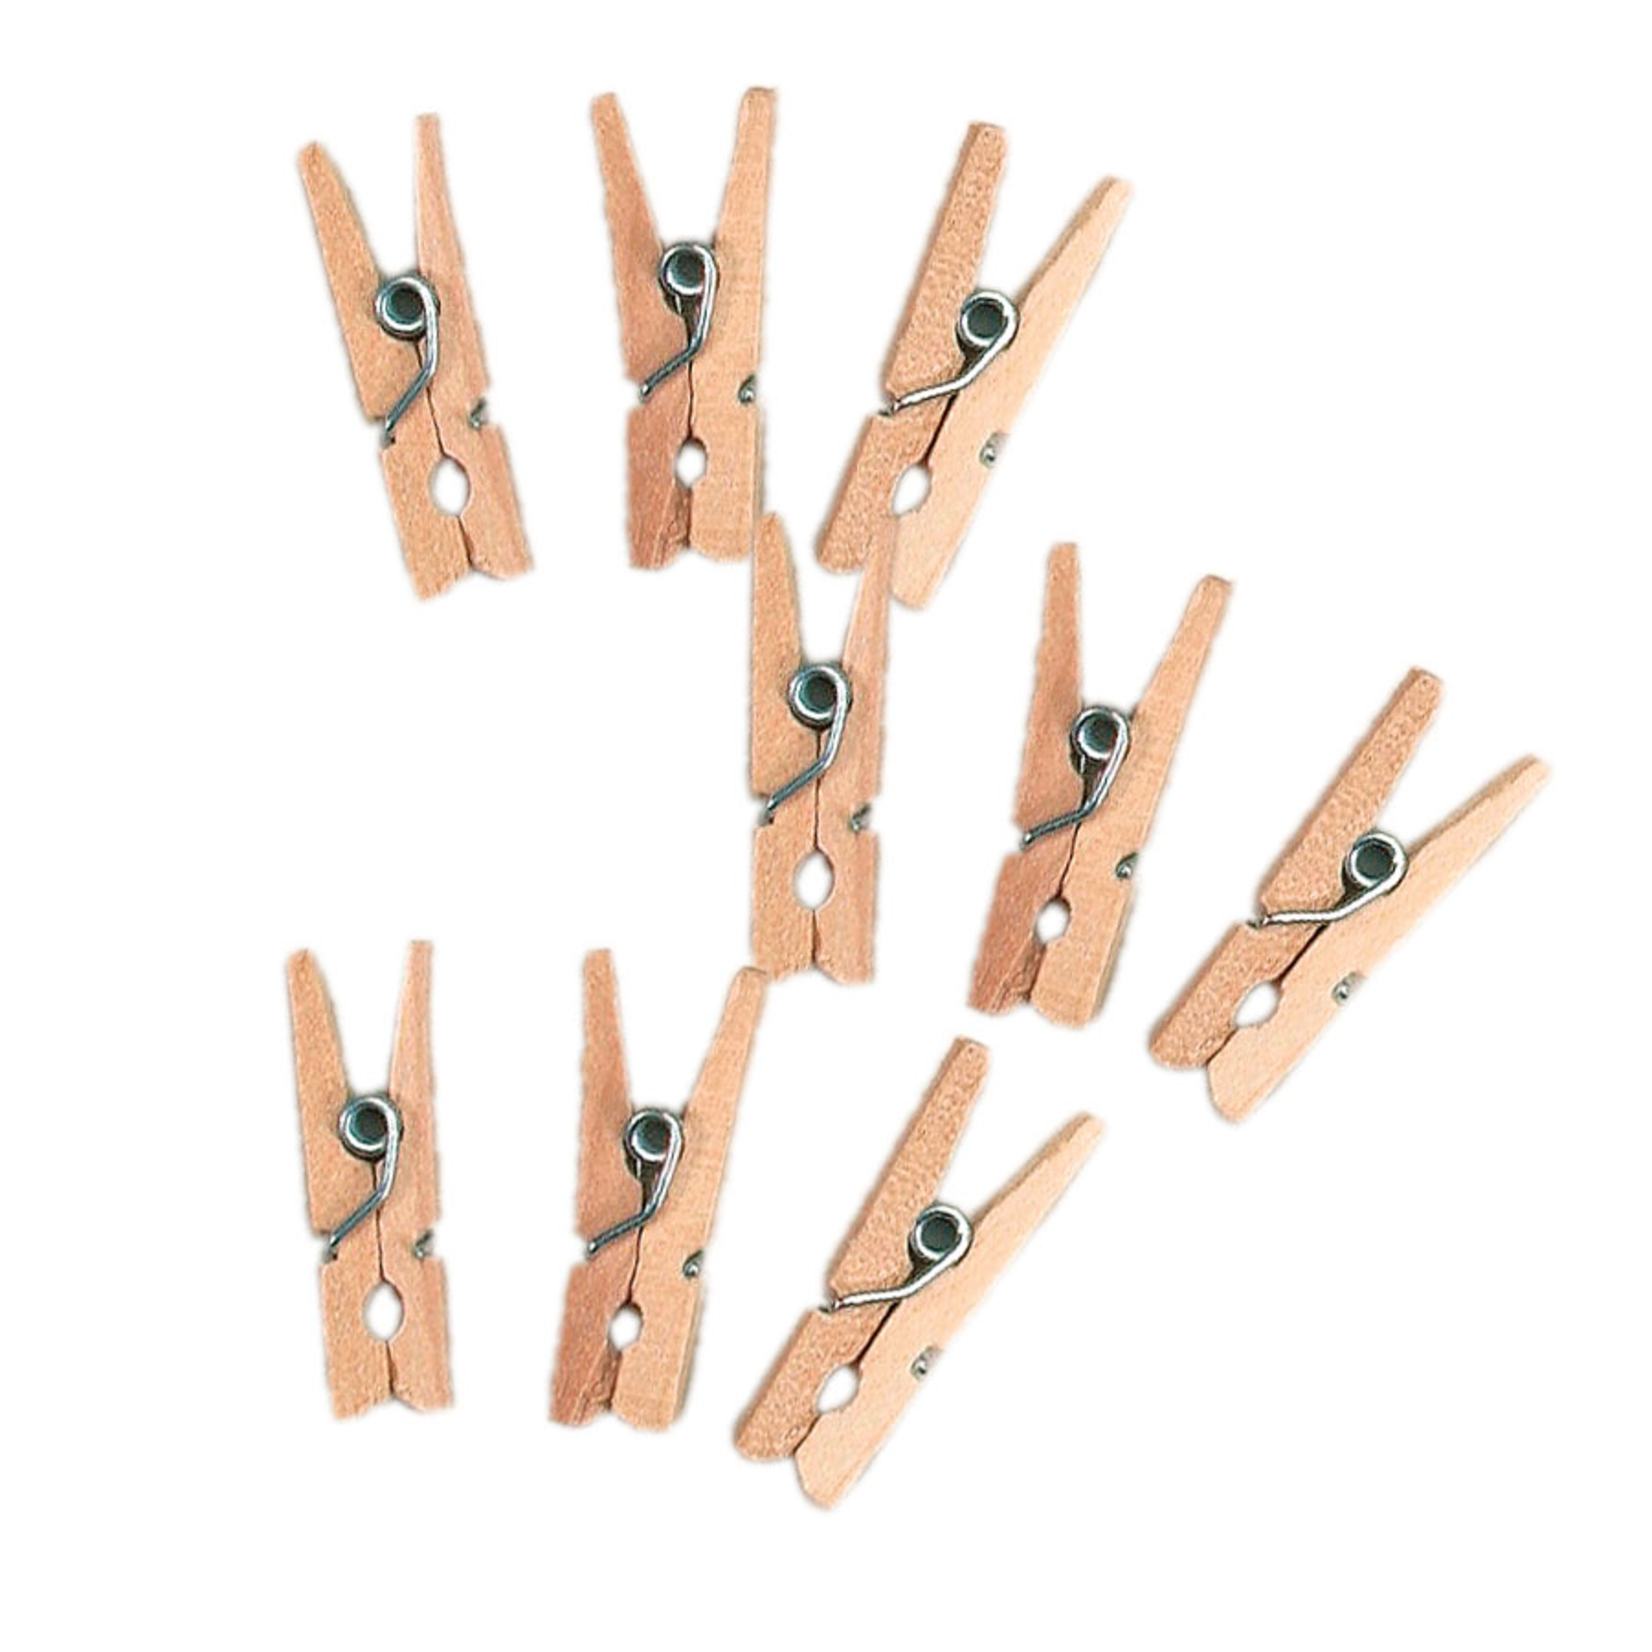 Wood Clothespins Natural, reg $1.99